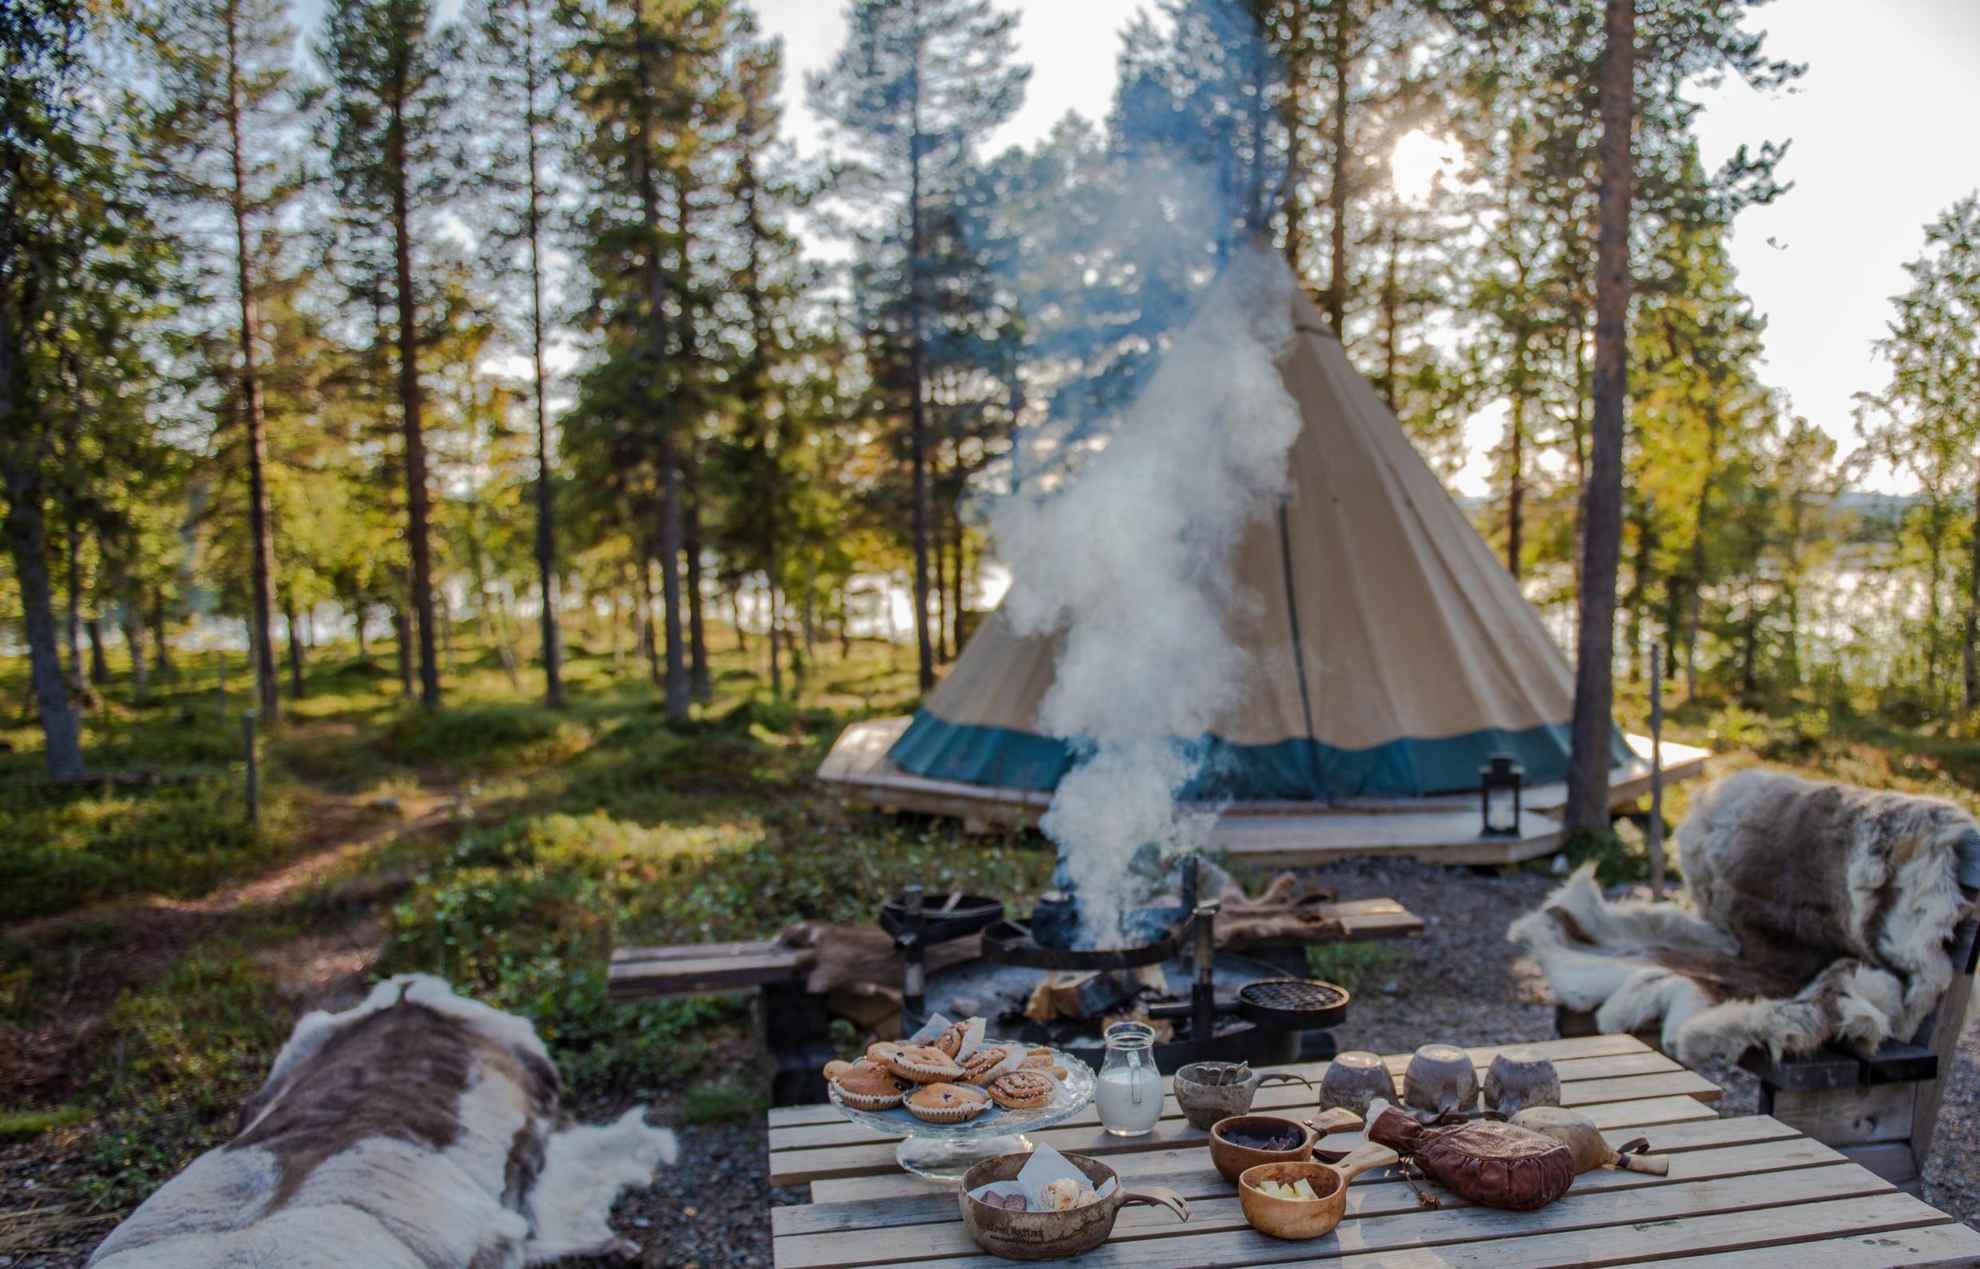 Mit Rentierfellen bezogene Bänke neben einem Tisch mit Tassen und Schüsseln und einem Teller mit Brötchen. Eine Kaffeekanne wird über ein Lagerfeuer gestellt. Ein Lavvu-Zelt im Hintergrund und man sieht einen See zwischen den Bäumen.